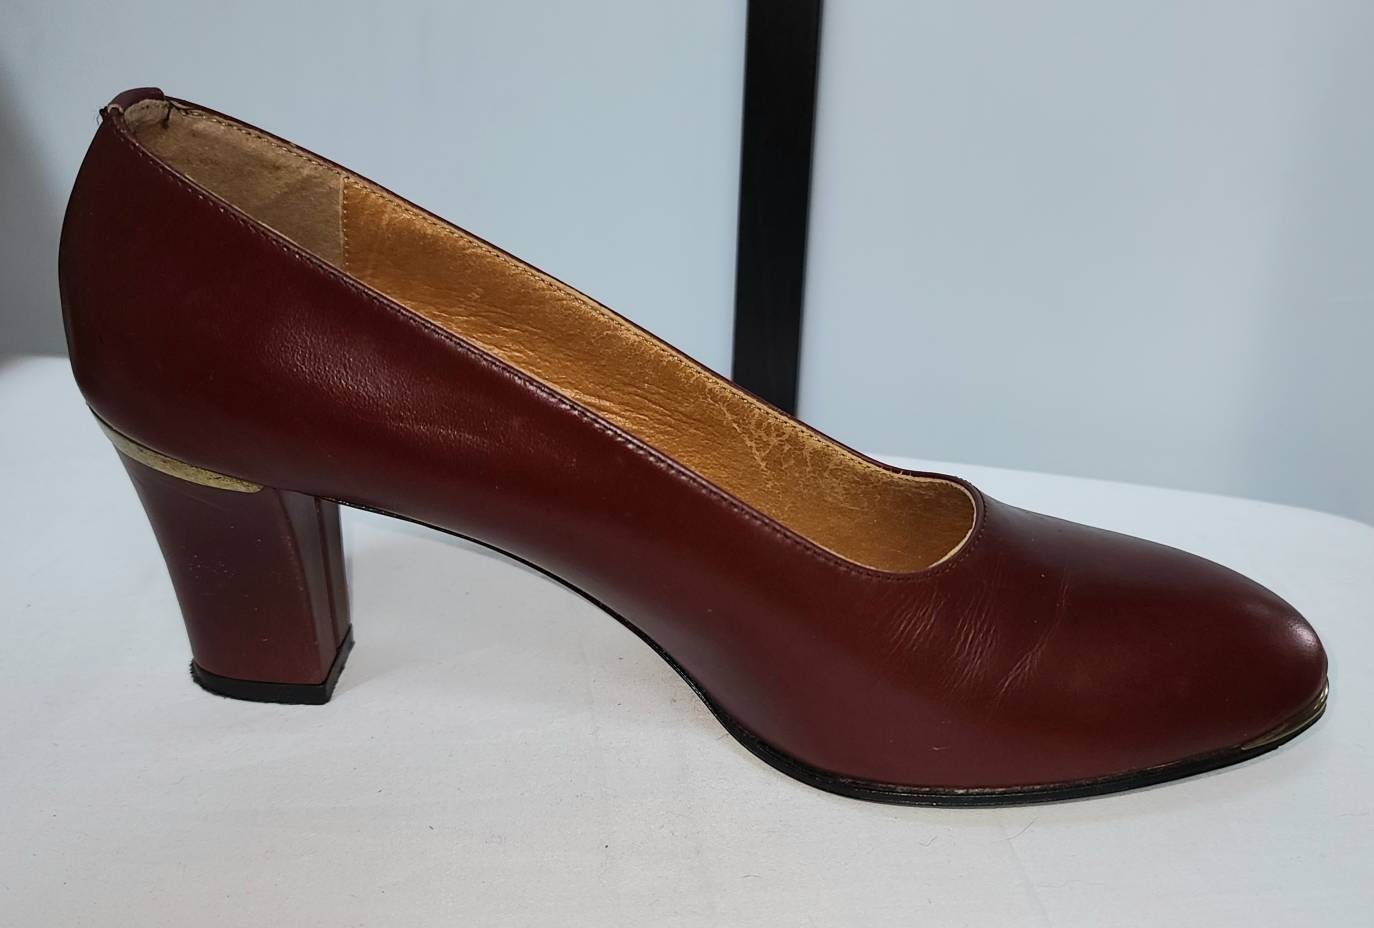 Vintage Etienne Aigner Shoes 1970s 80s Dark Red Leather Pumps Heels Goldtone Metal Trim Metal A Logos Designer Boho 8.5